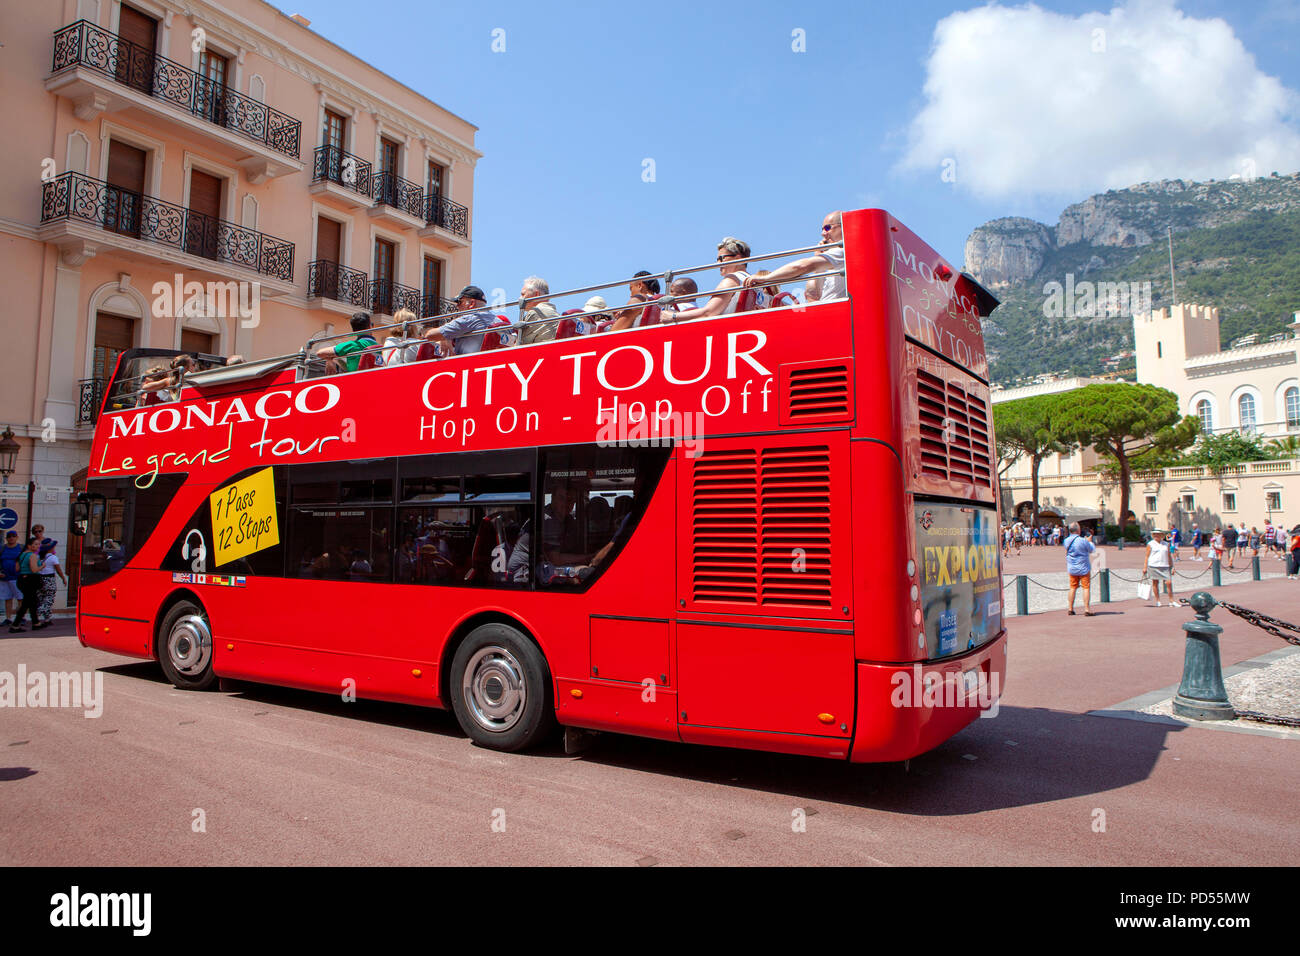 Monaco Le Grand Tour Hop On Hop Off bus in monaco Stock Photo